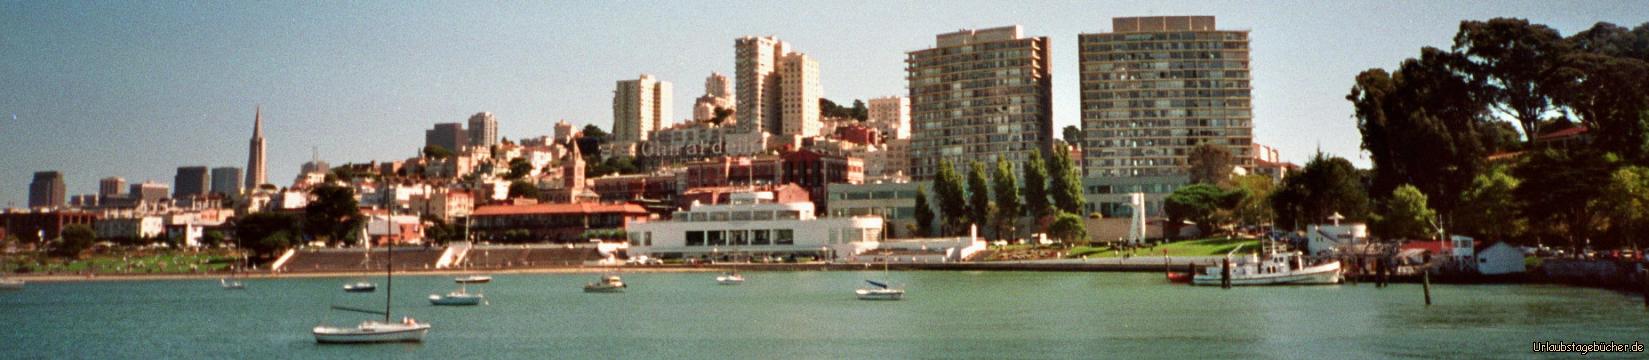 Stadtblick: Blick von der San Francisco Bay in Richtung Stadt